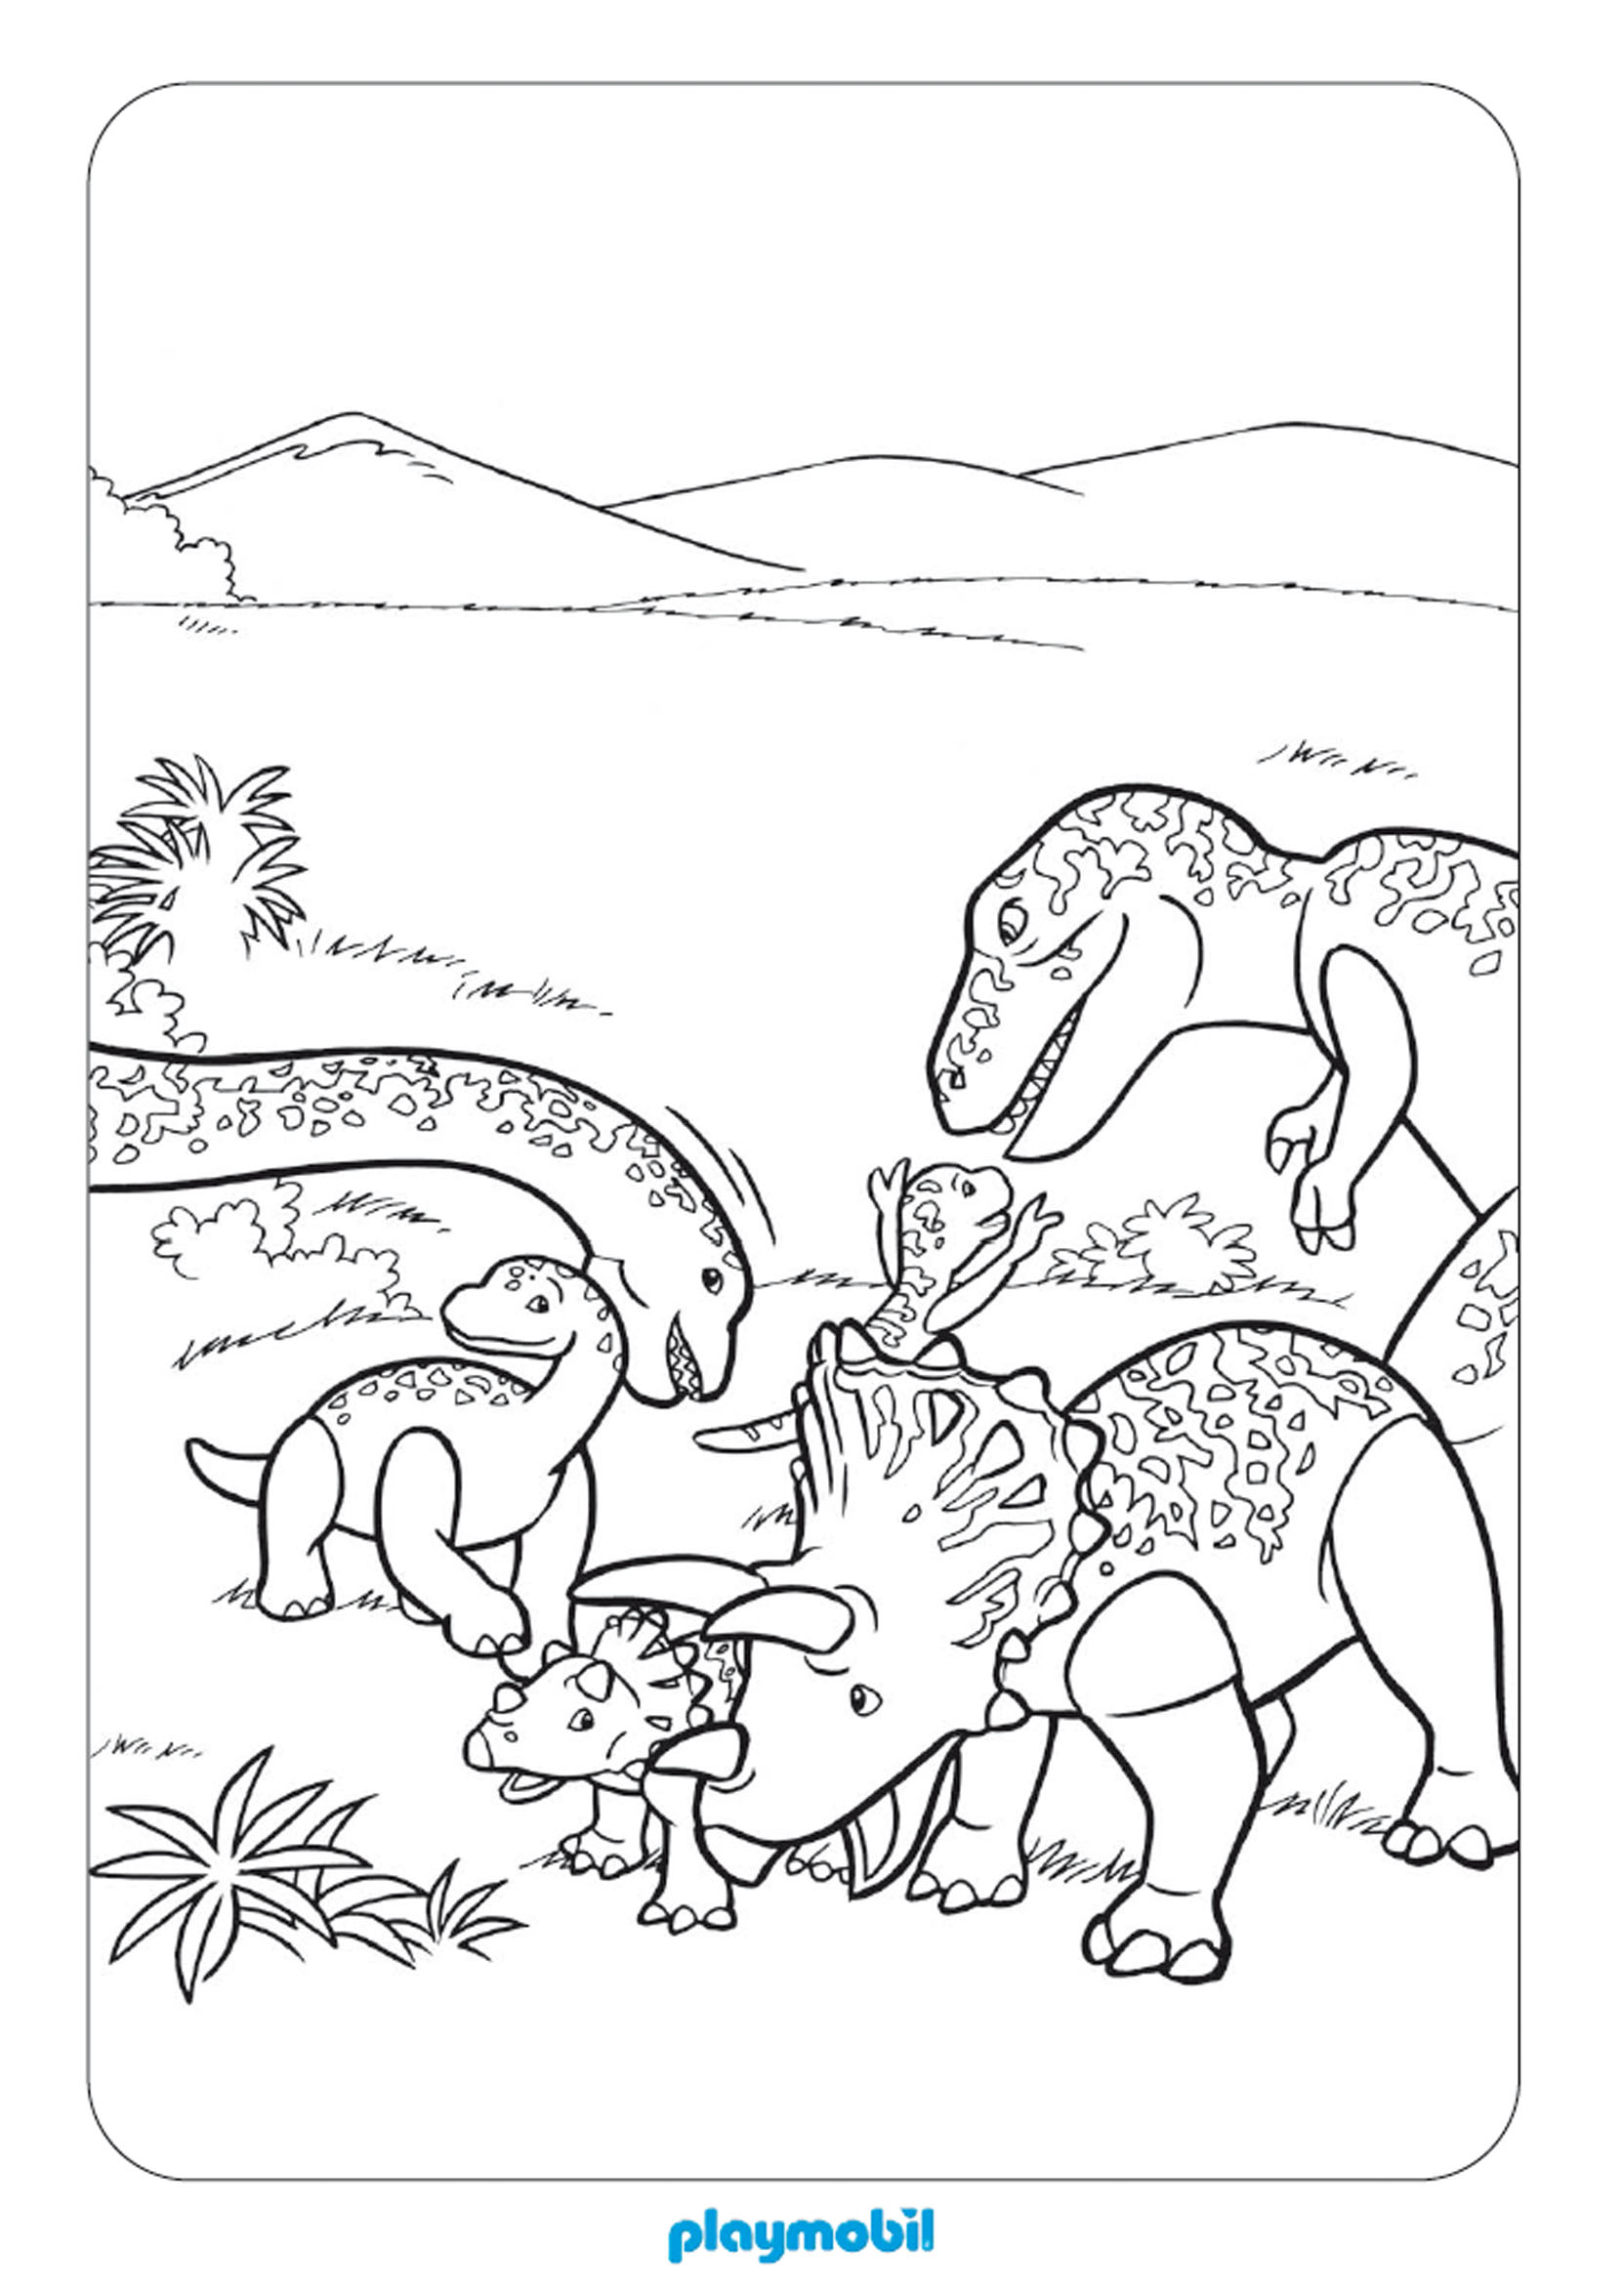 Dessin gratuit de dinosaure a imprimer et colorier